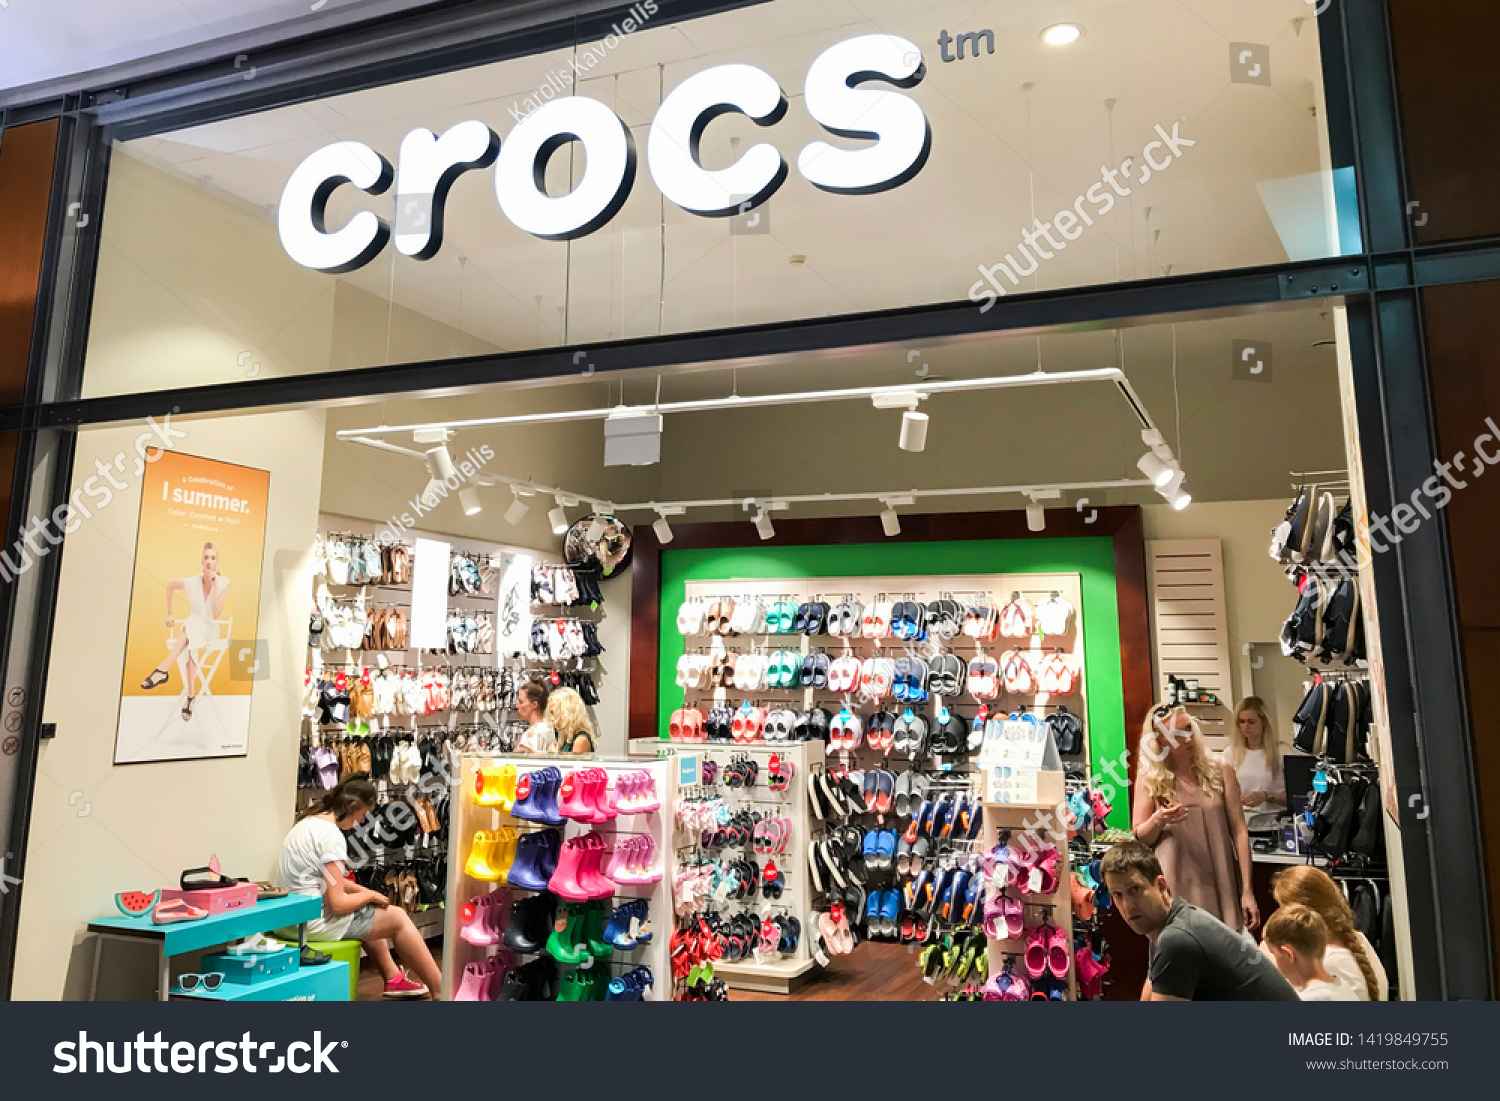 butik crocs